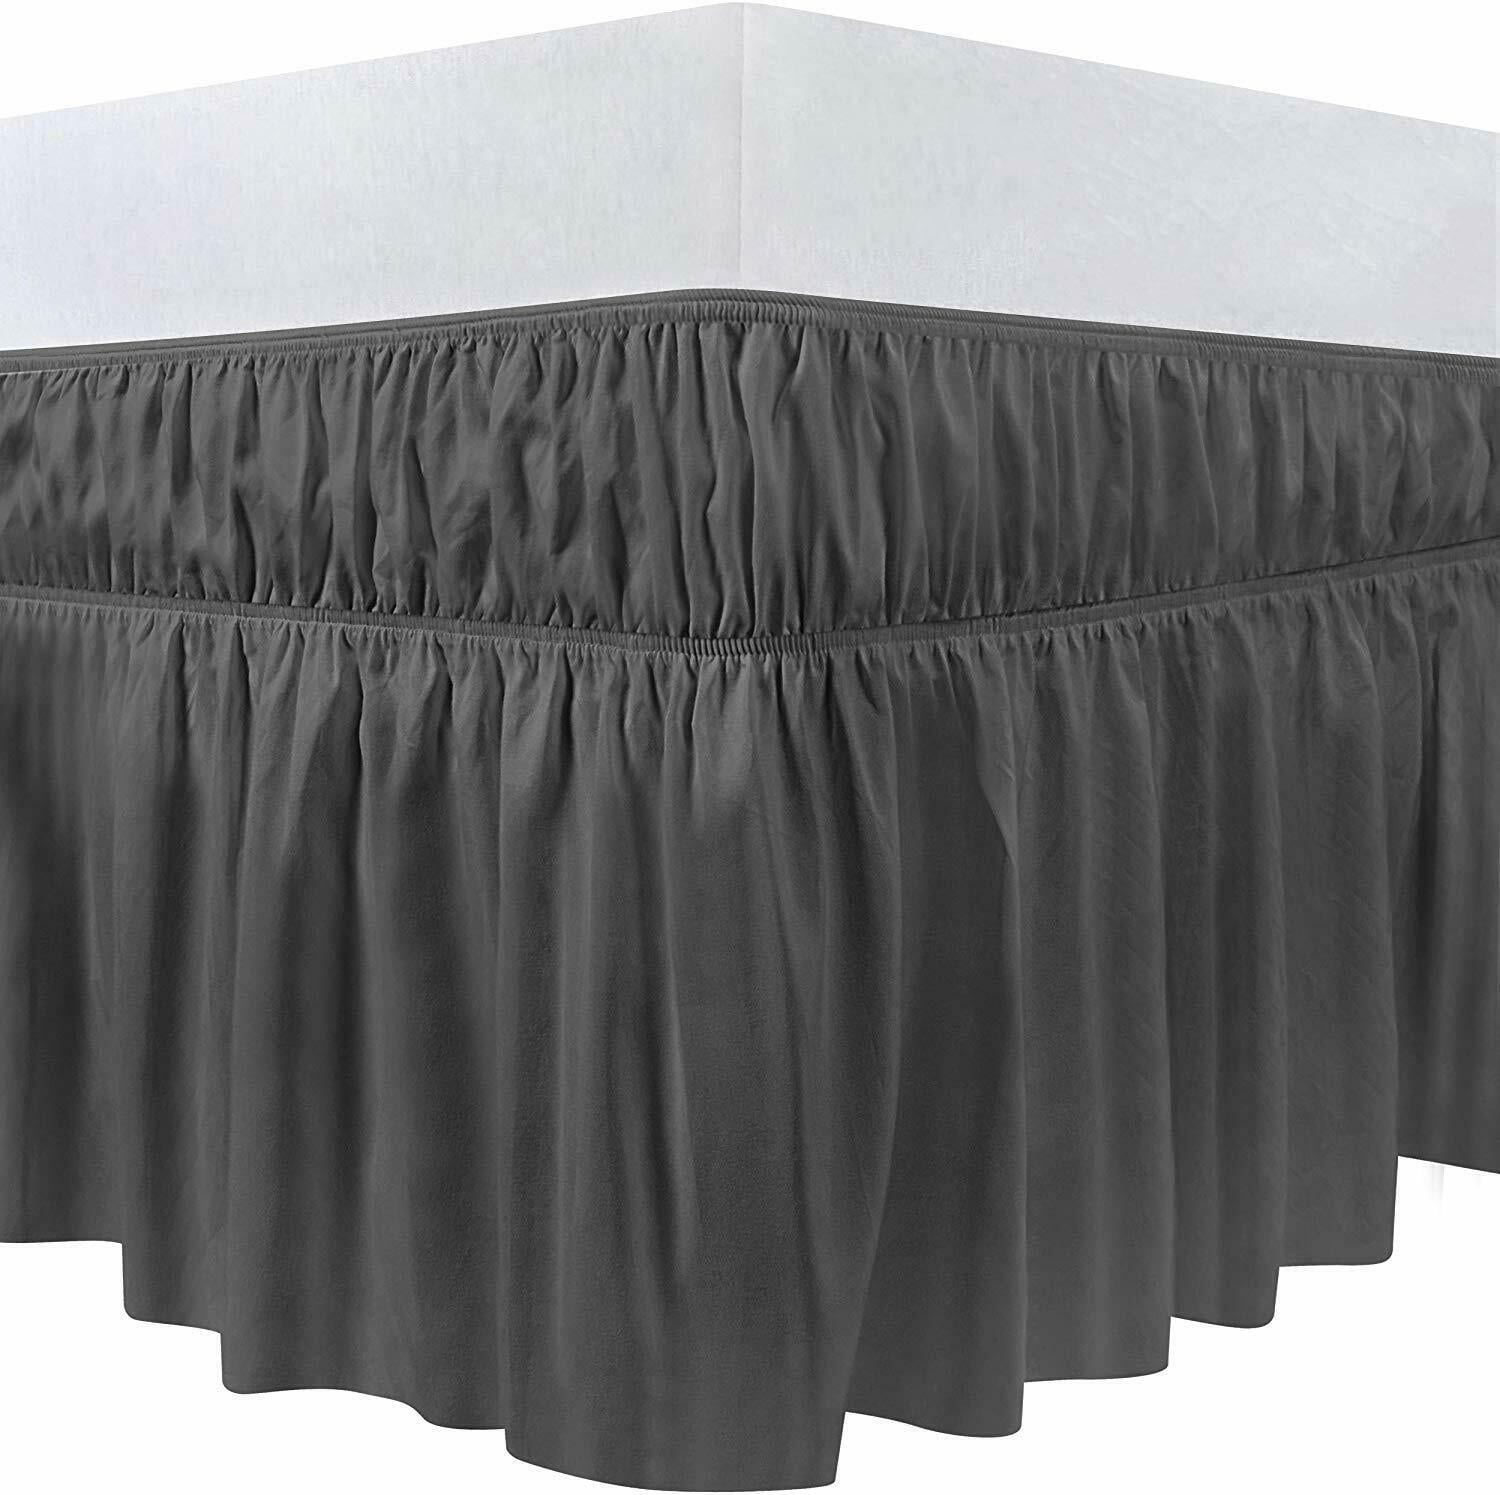 16 Inch Skirt Length Basics Ruffled Bed Skirt Dark Grey Full